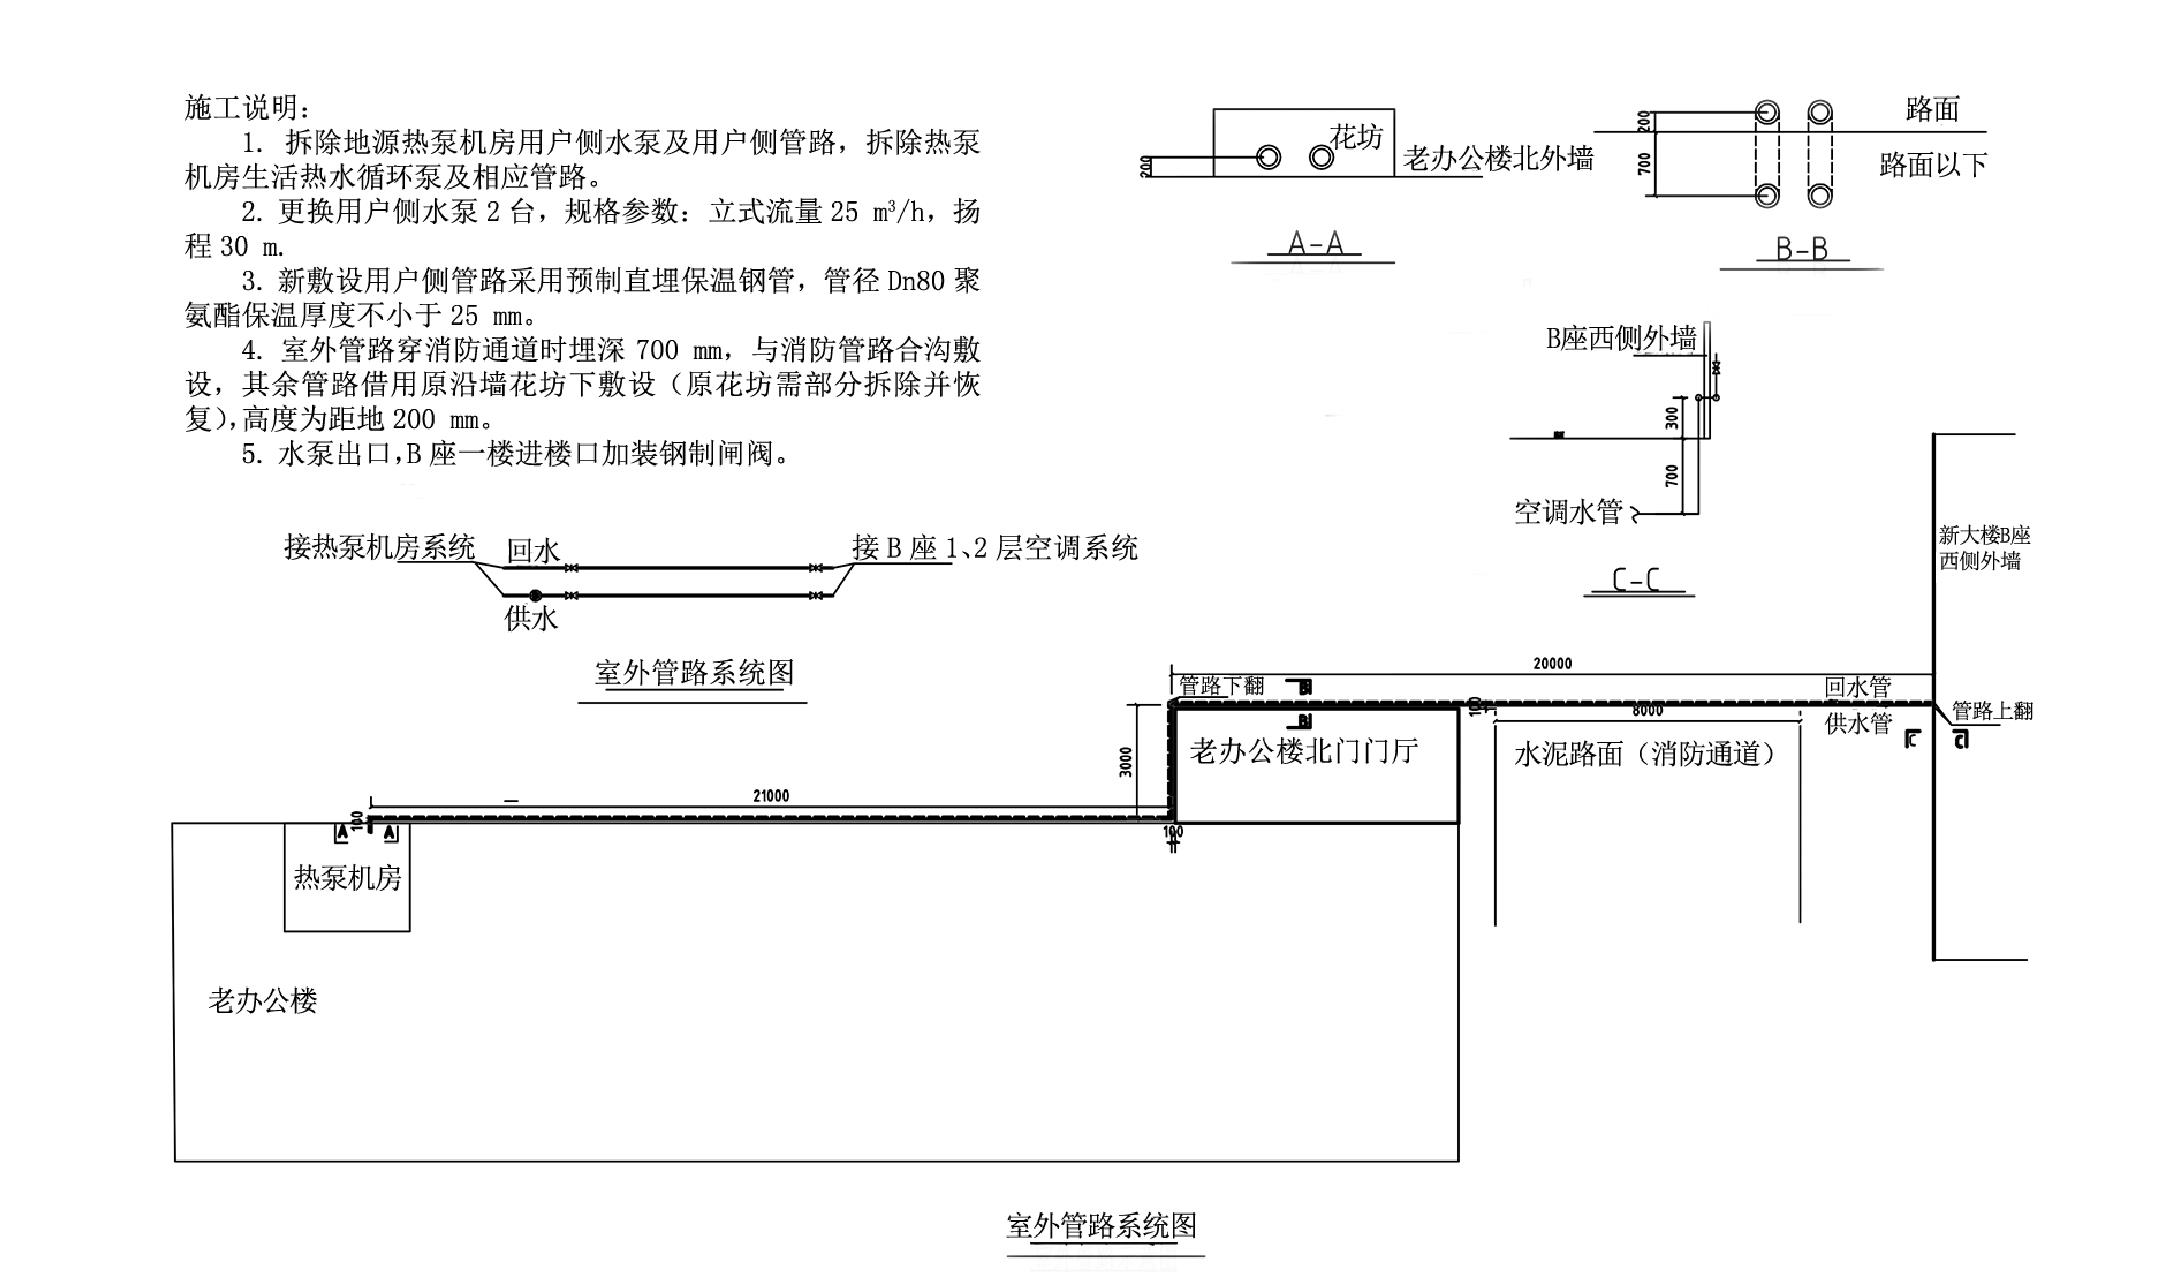 1.2 浙江省建筑科学设计研究院——地源热泵改造再利用